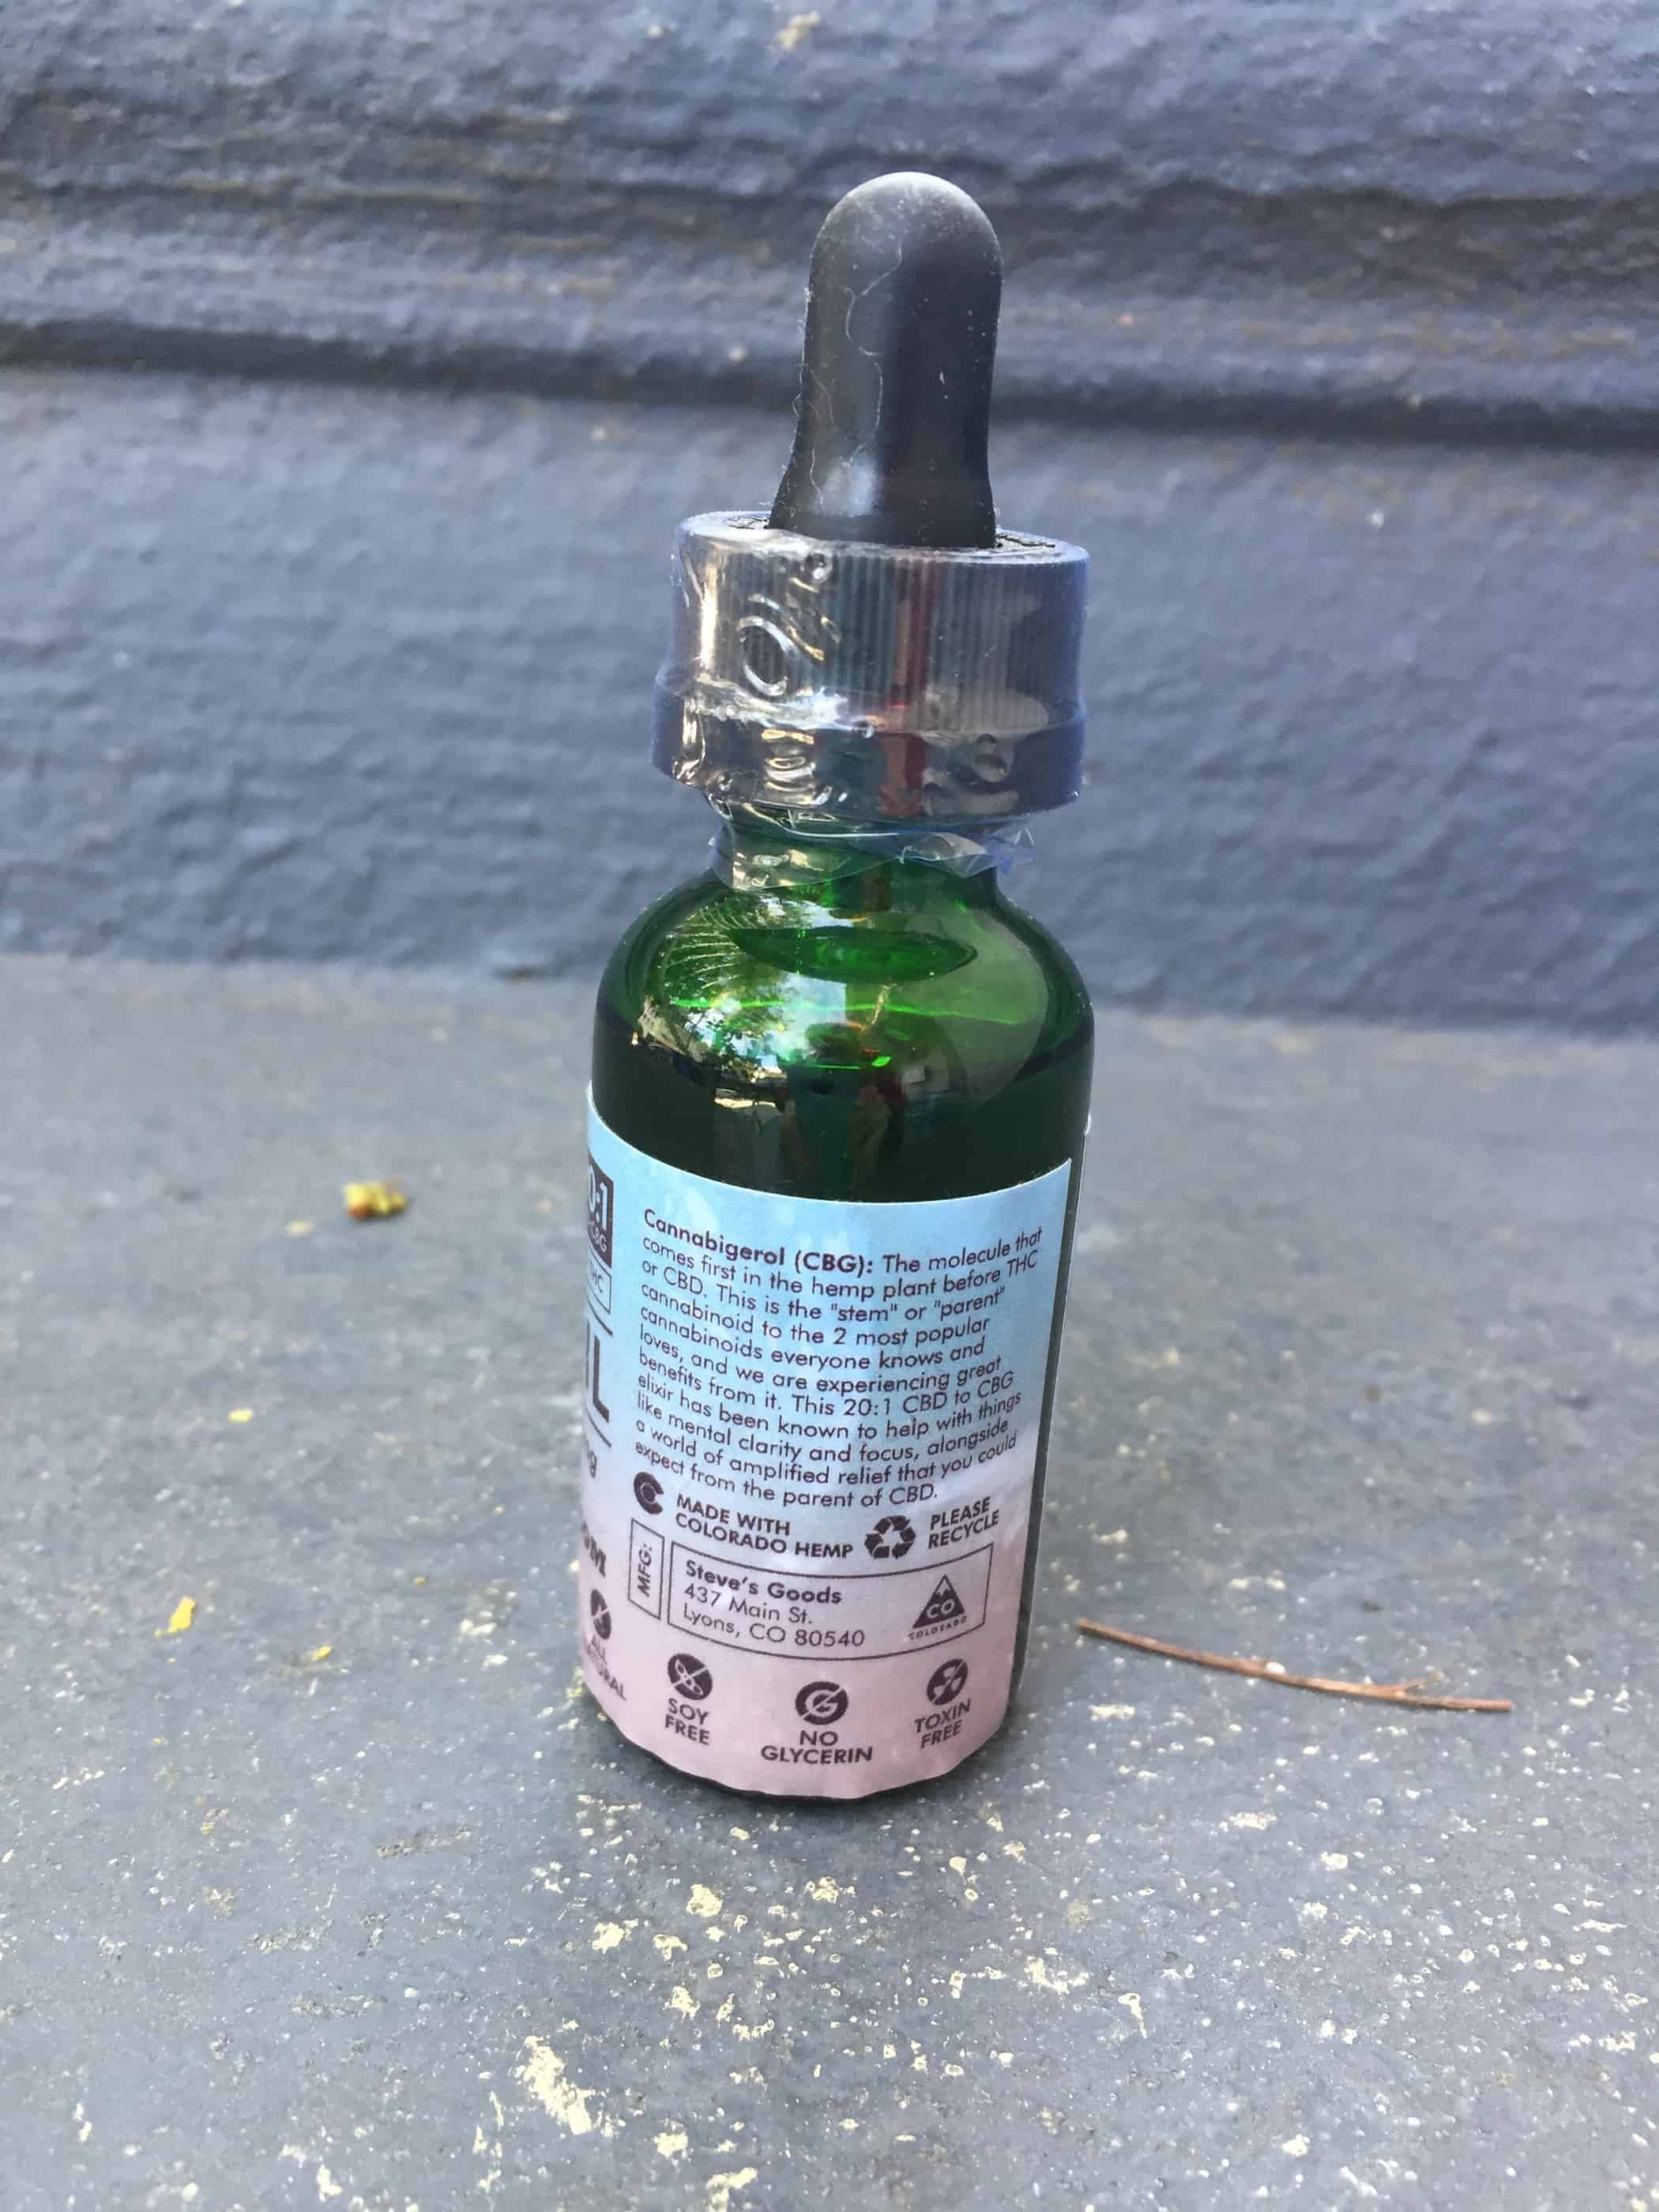 steves goods cbd cbg 20 1 oil 500 mg blueberry og blast review Save On Cannabis beauty shot